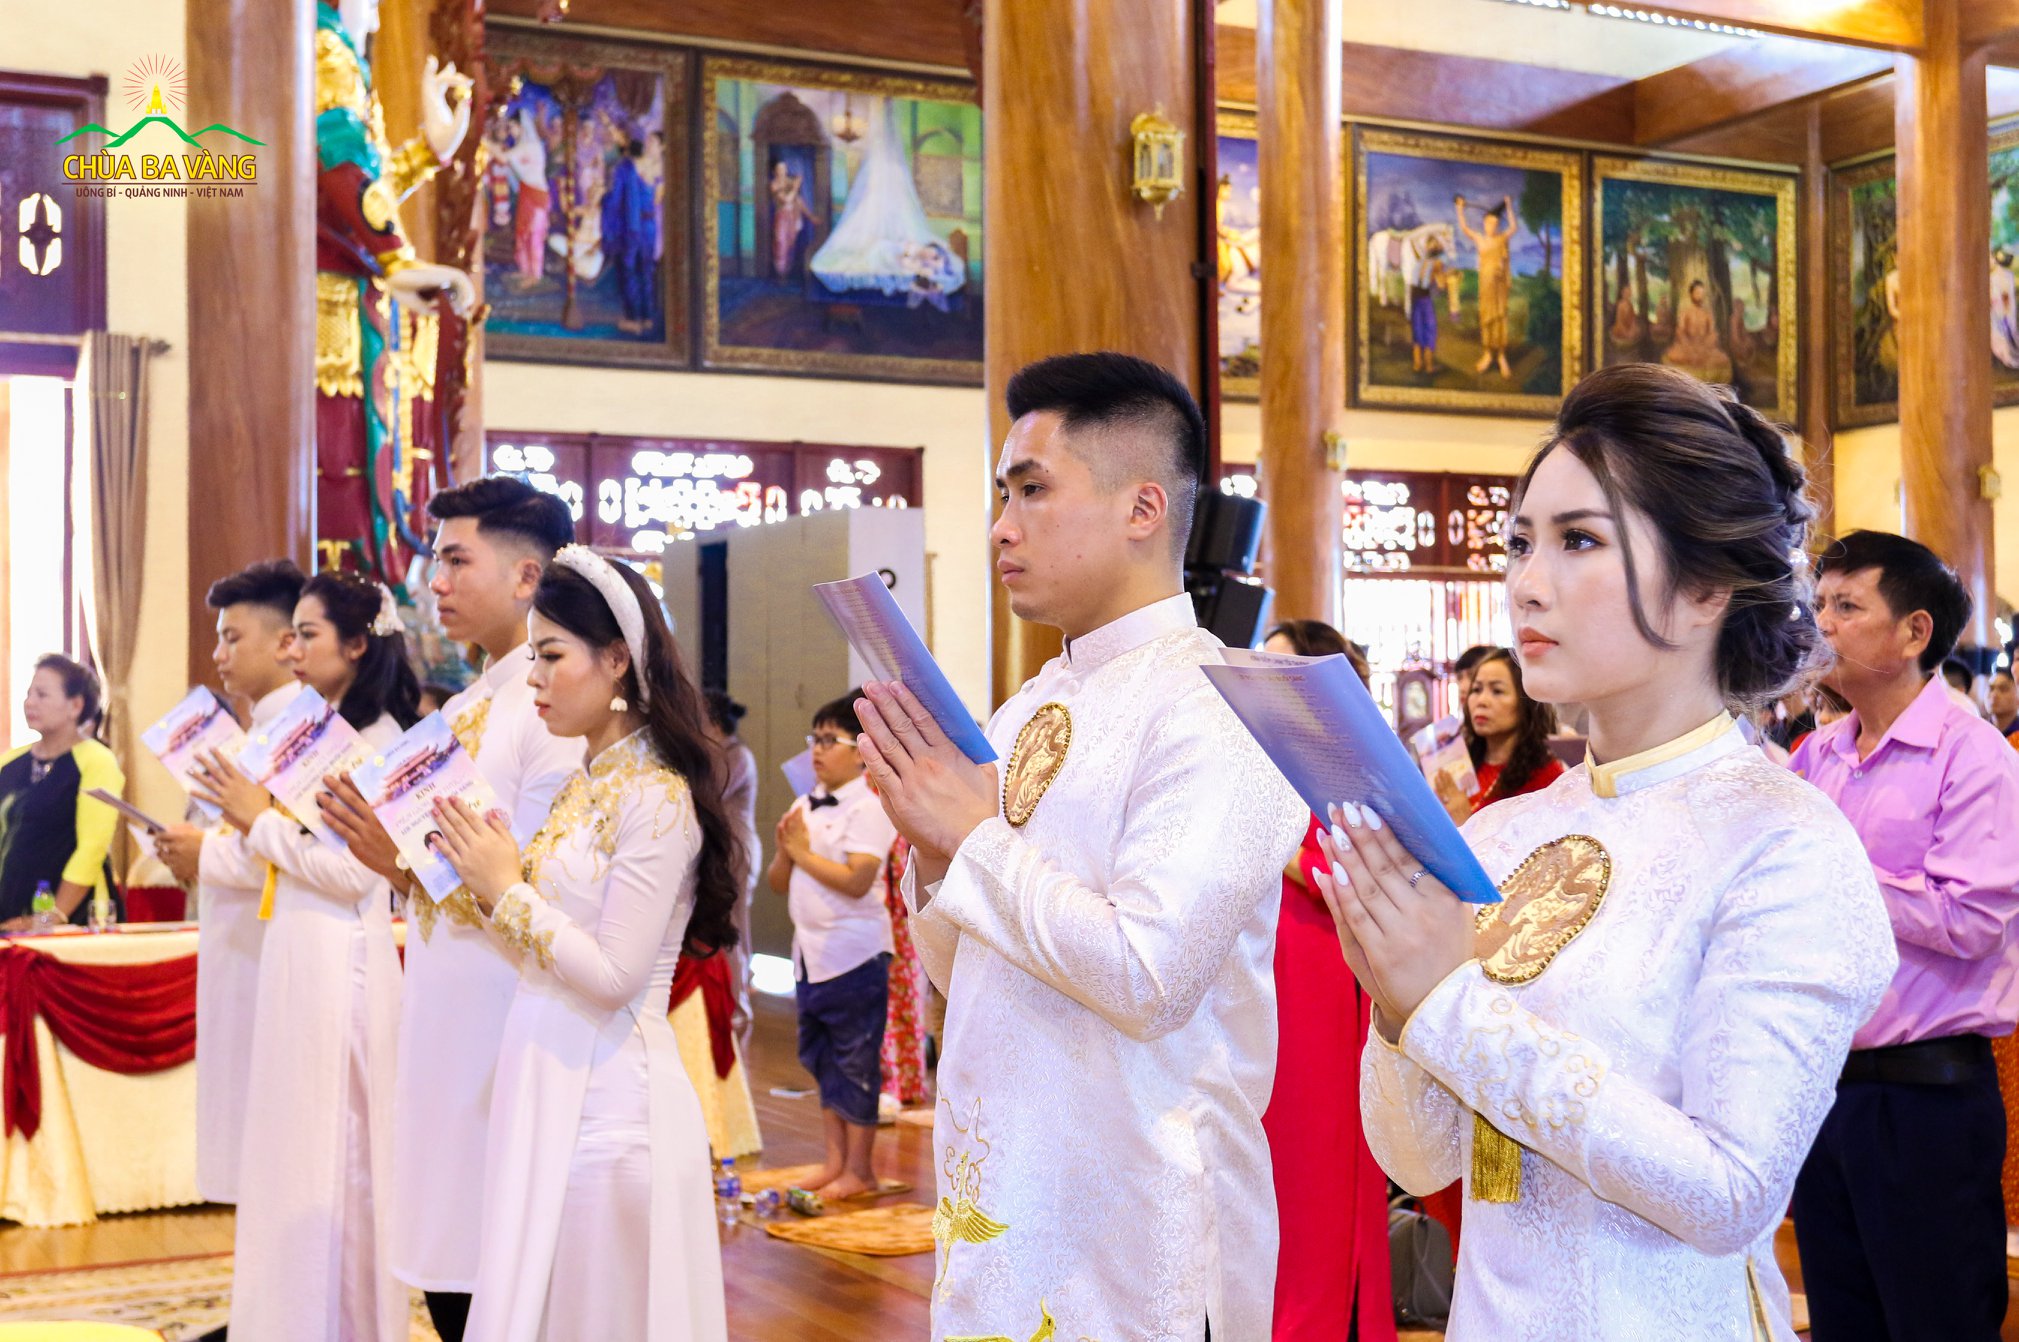 Các đôi tân lang, tân nương trong buổi lễ Hằng thuận tại chùa Ba Vàng (ảnh năm 2019)